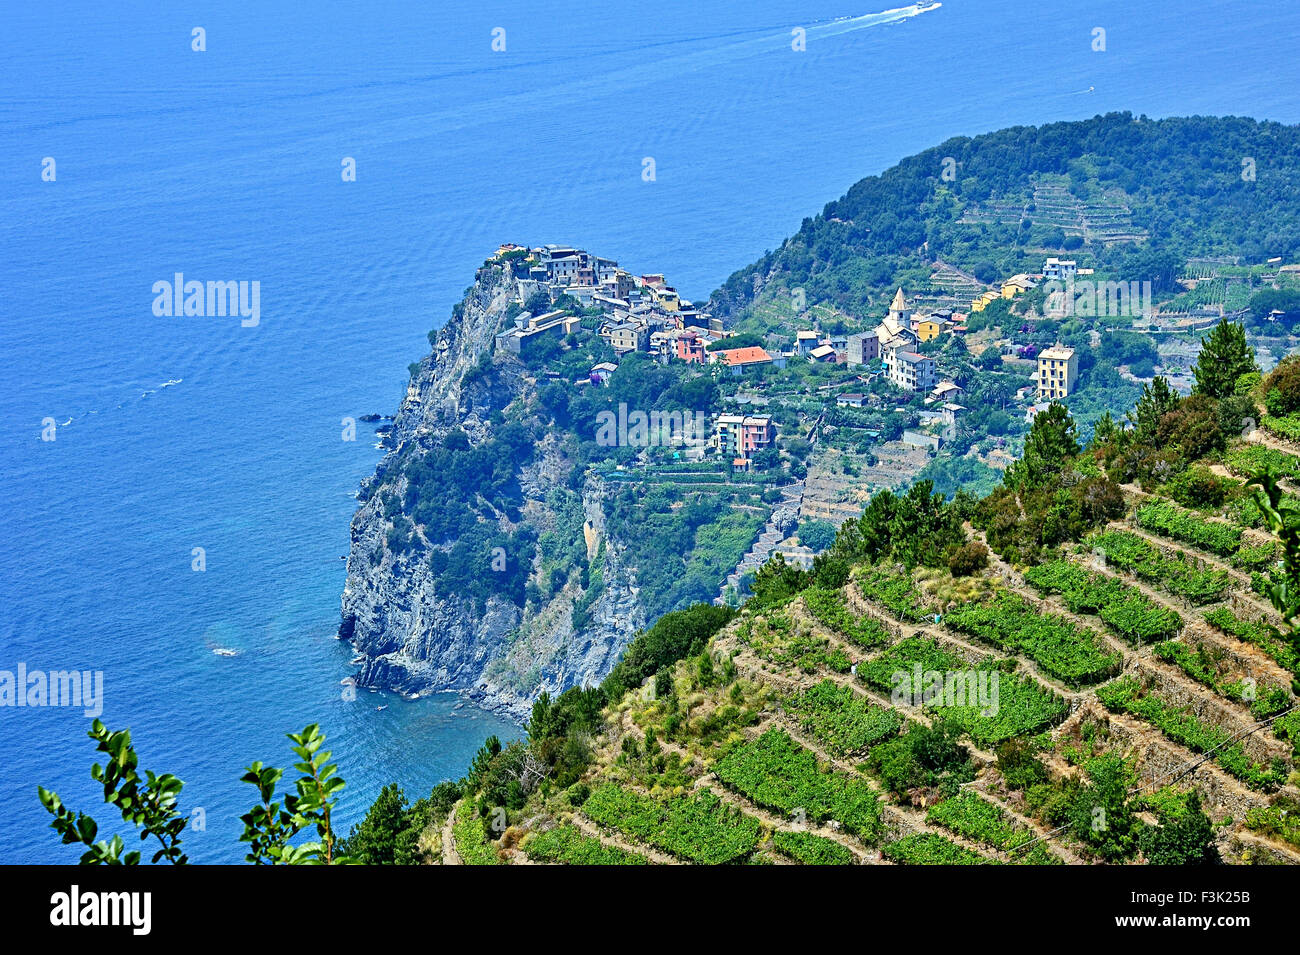 Abrupt descending vineyards at Cinque Terre, Italy Stock Photo